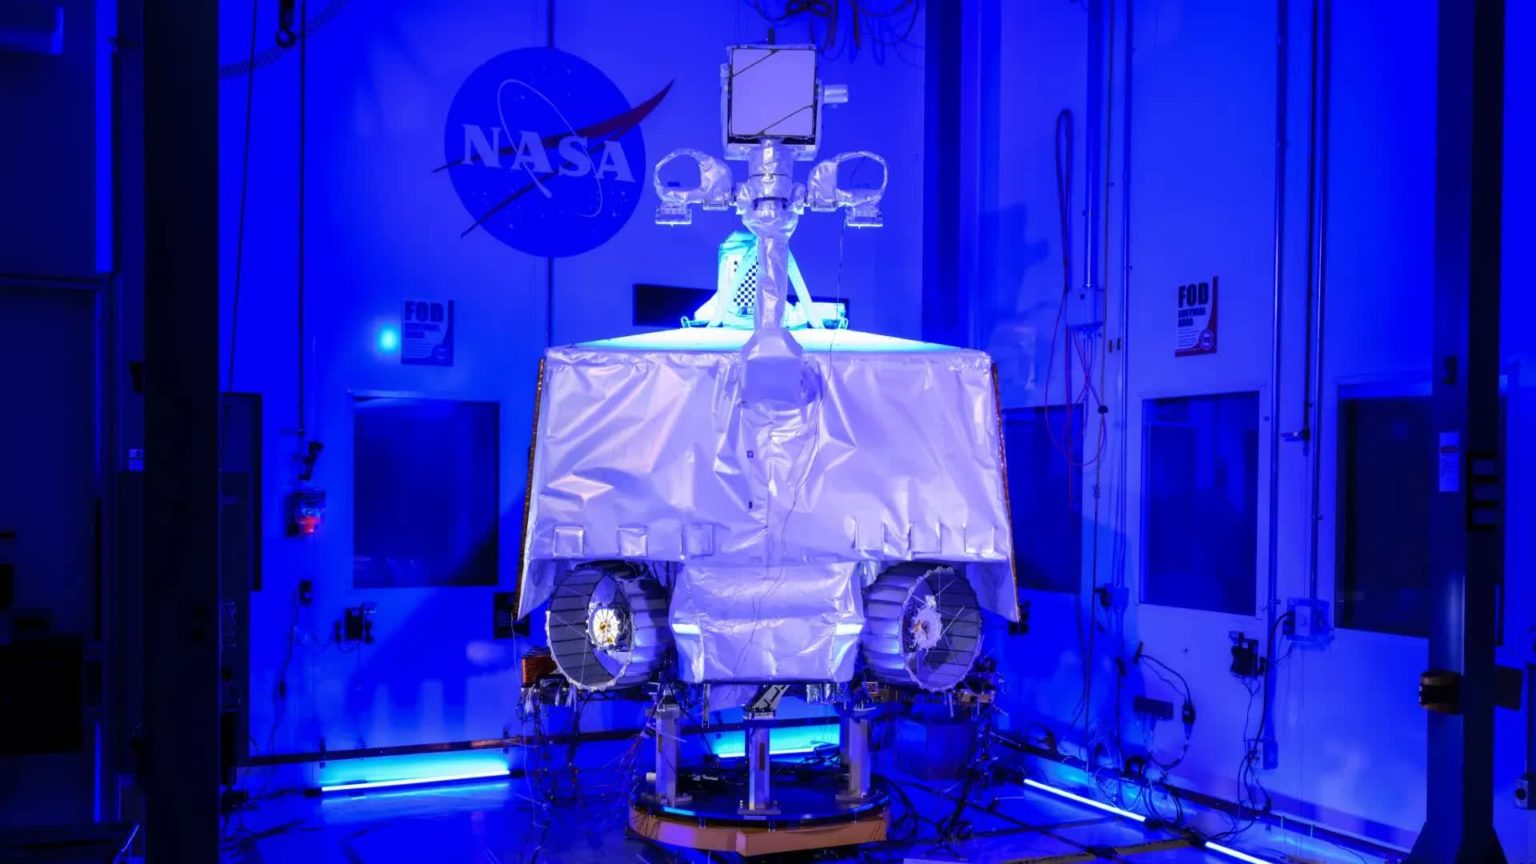 NASA scraps $450 million Viper moon rover project over cost concerns, delays